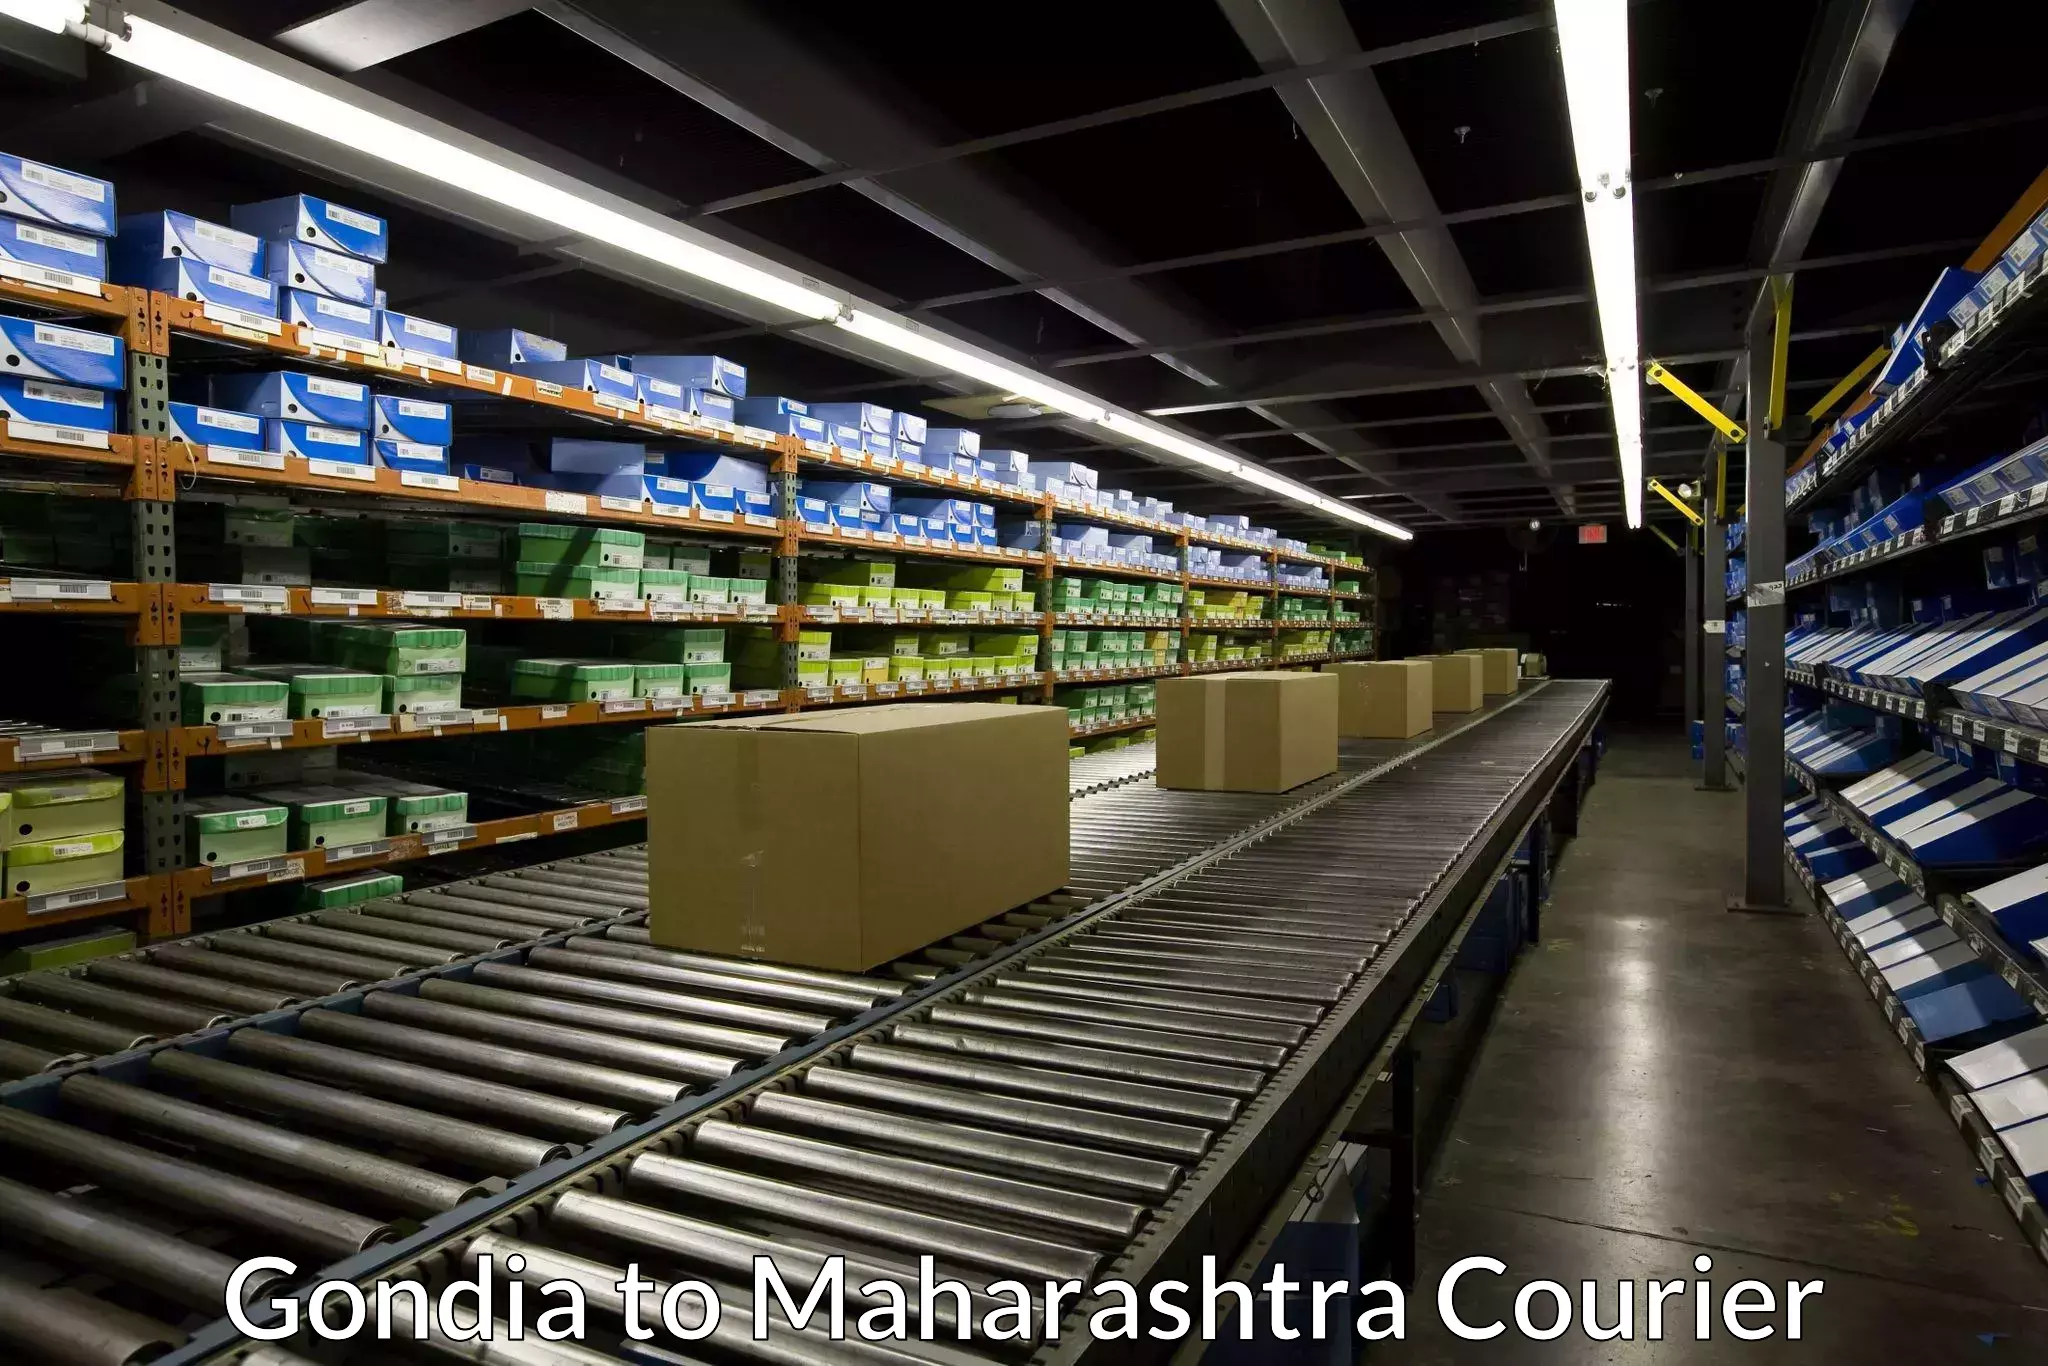 Courier service innovation Gondia to Maharashtra